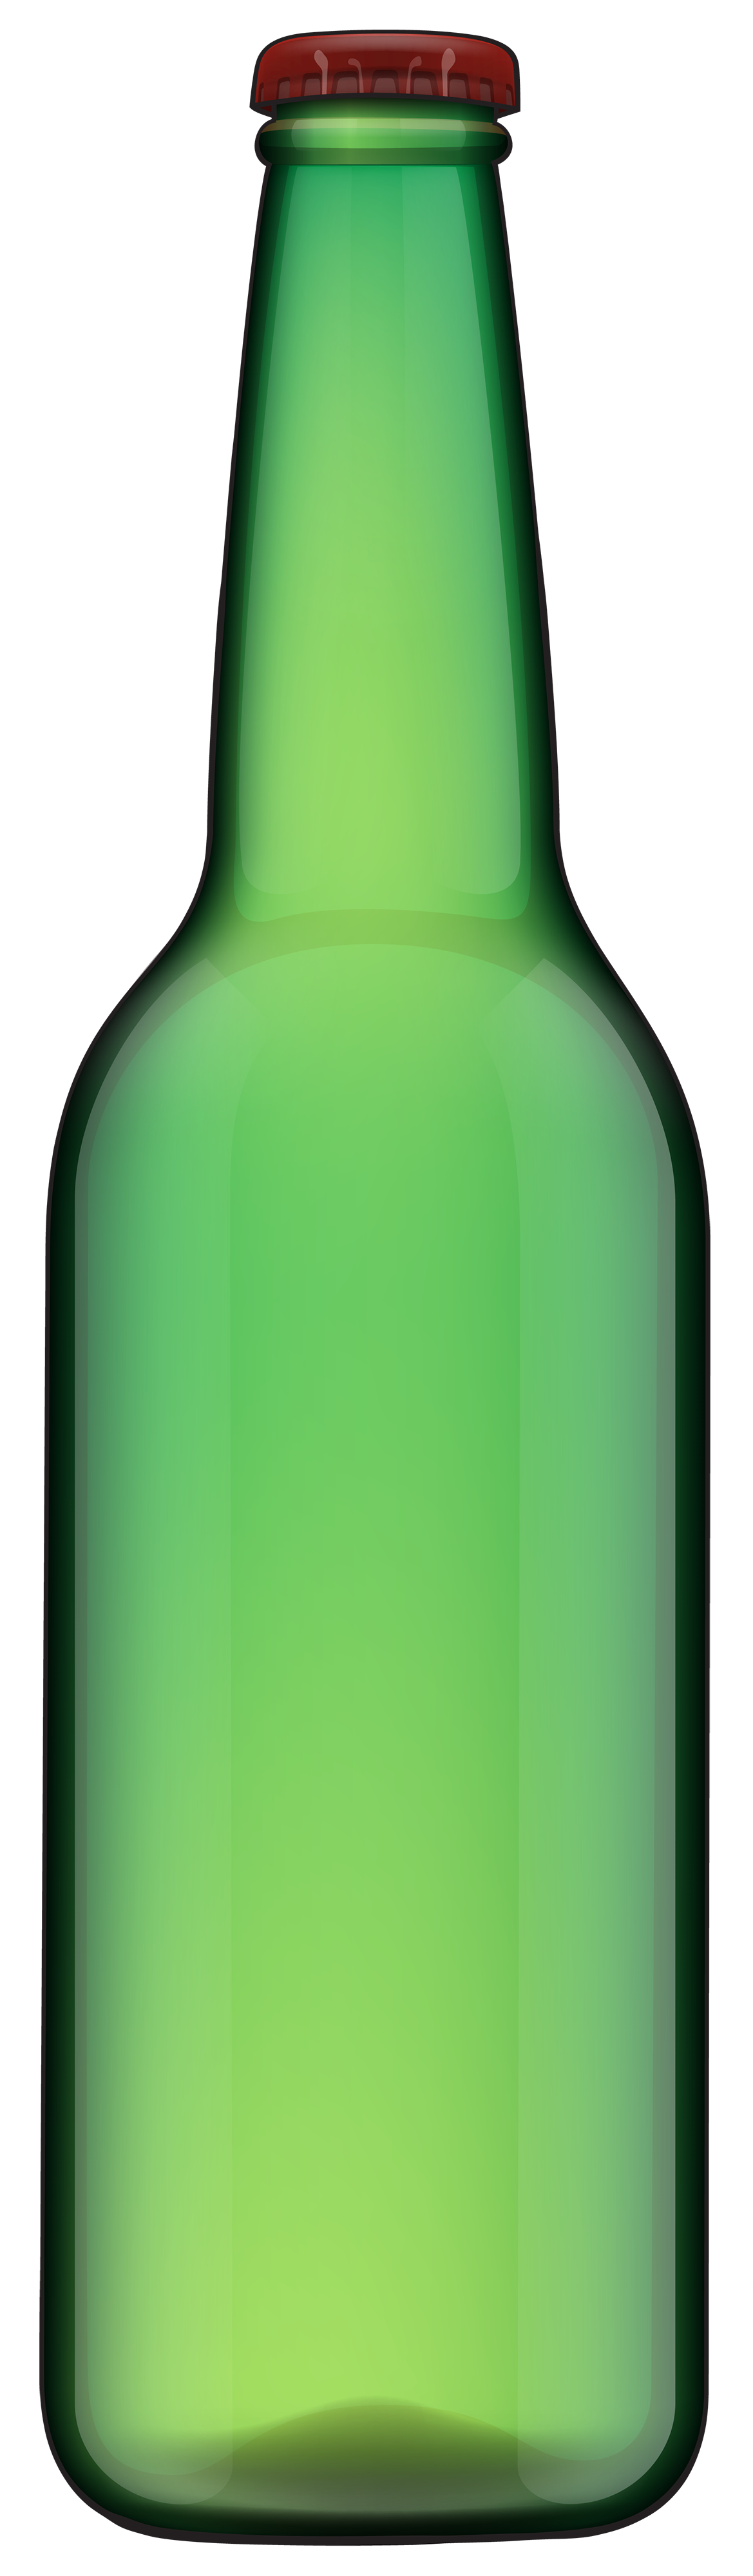 Bottle Png 5 PNG Image